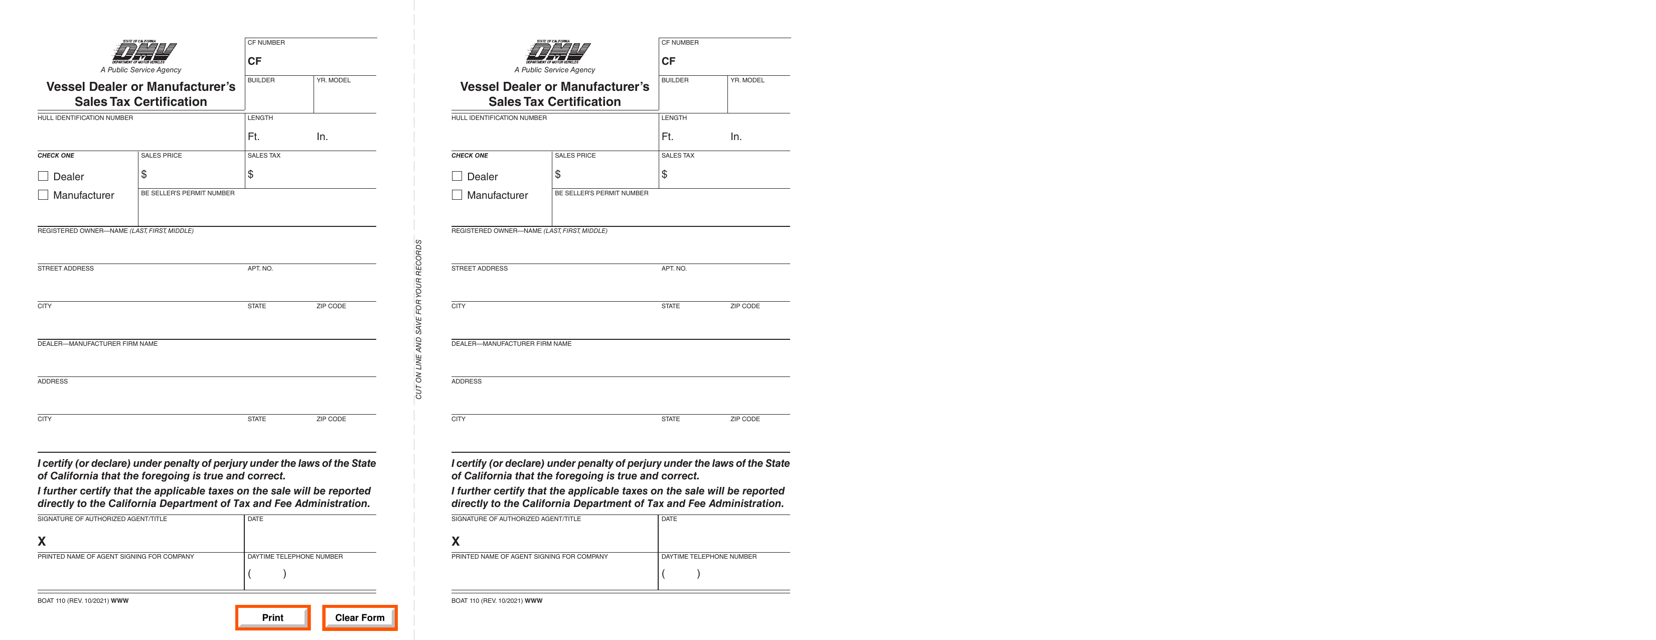 Form BOAT110 Vessel Dealer or Manufacturer's Sales Tax Certification - California